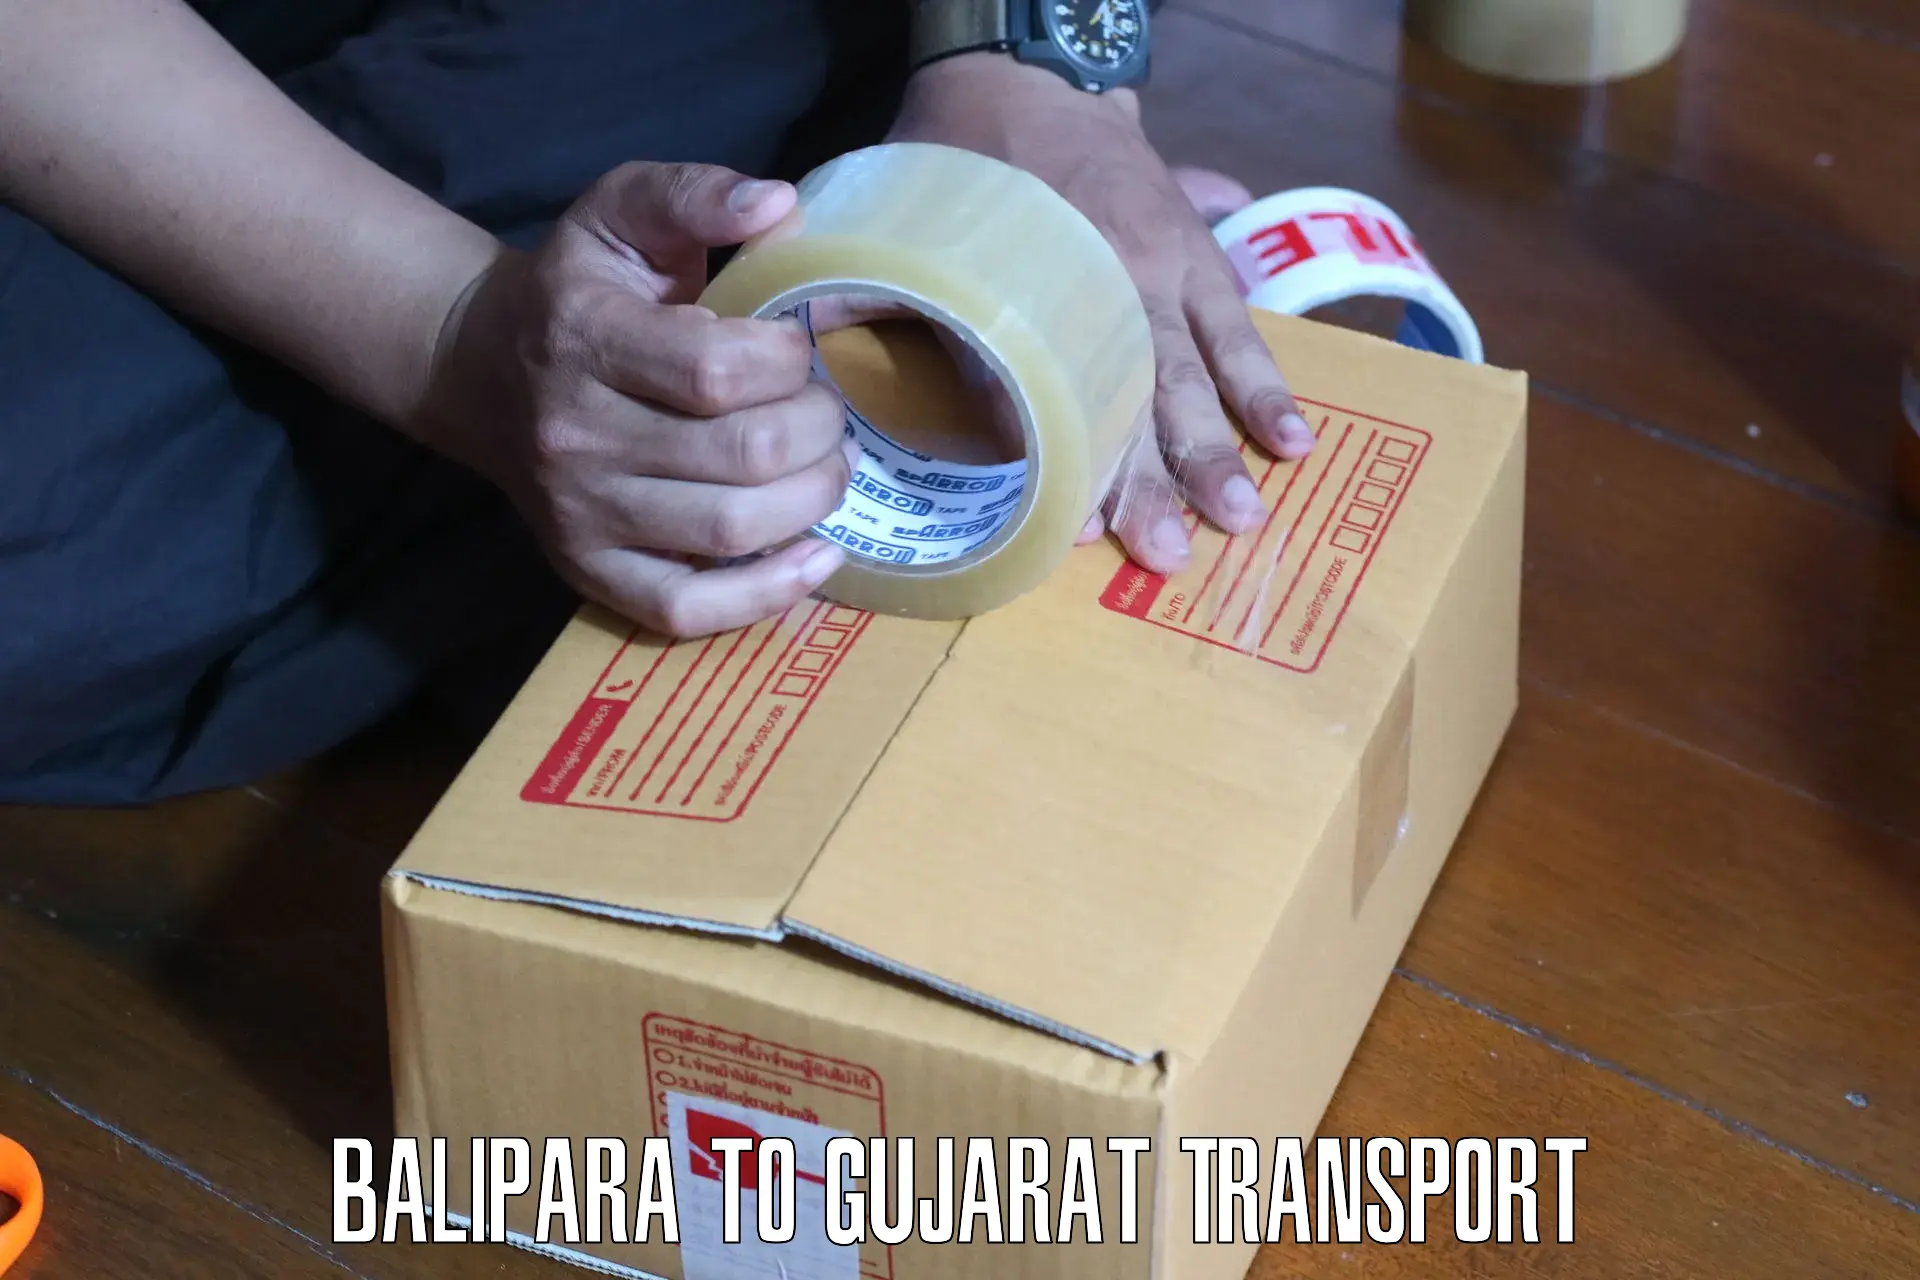 Truck transport companies in India Balipara to Navrangpura